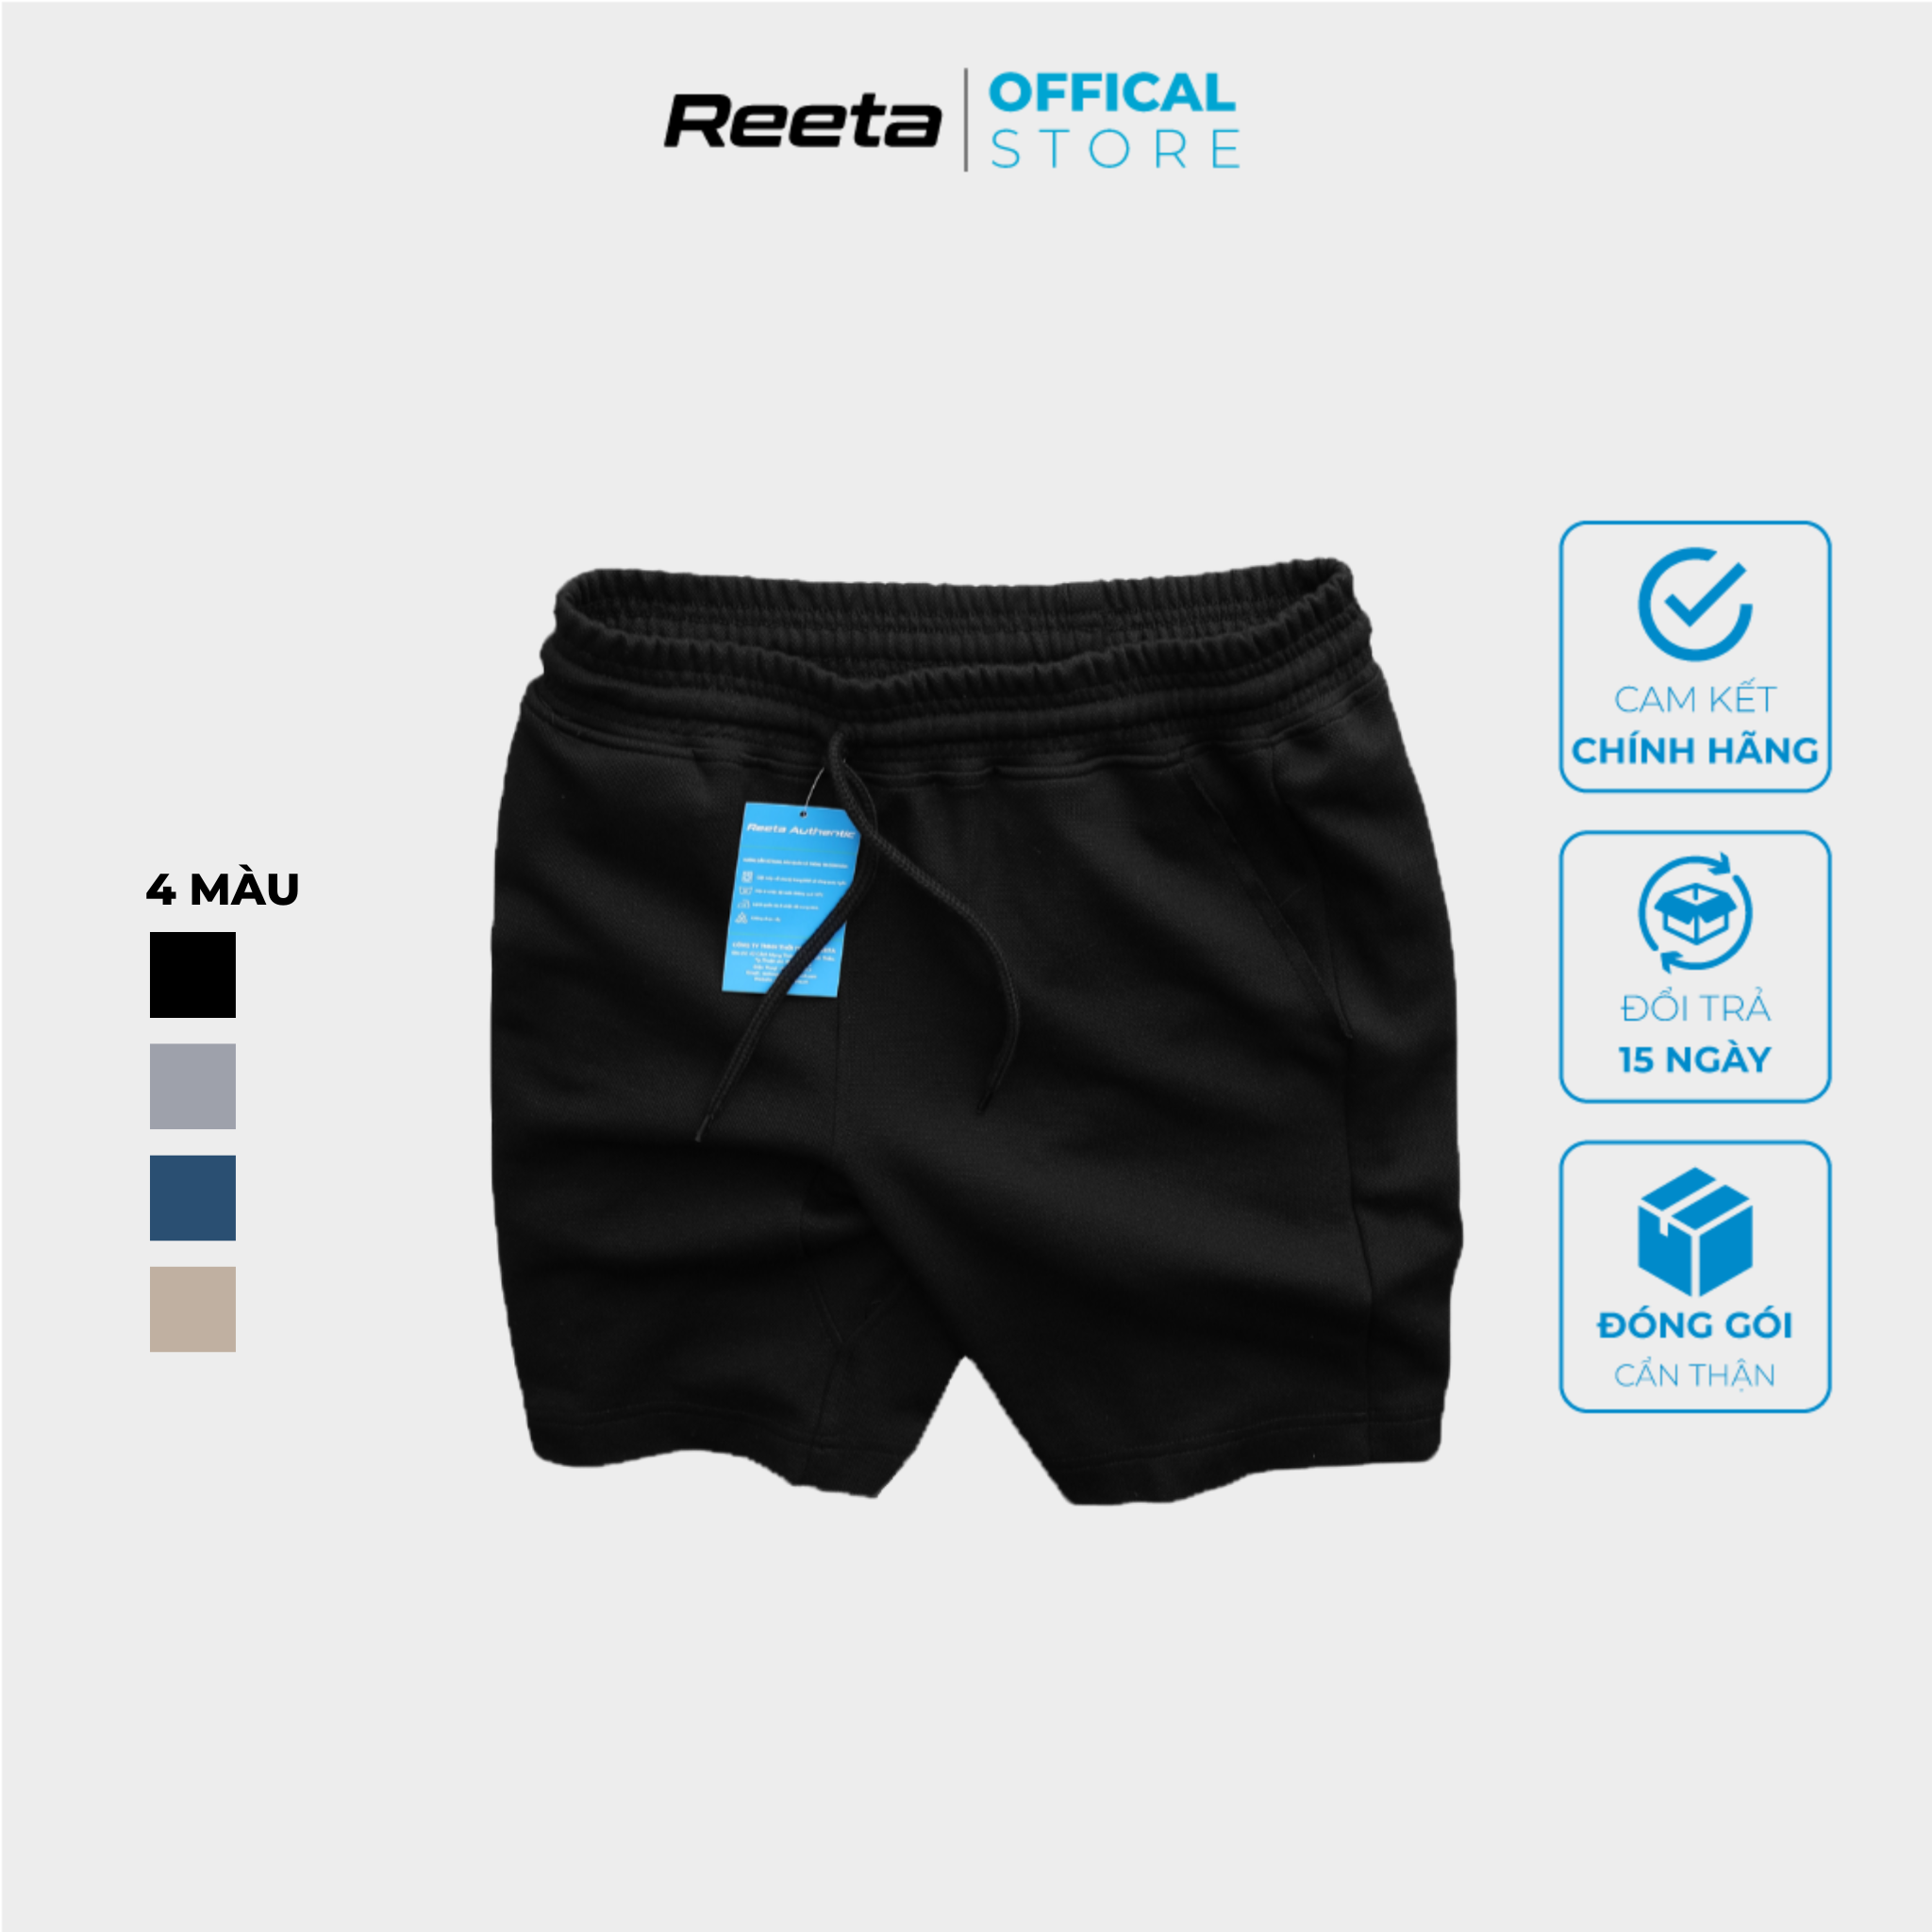 Quần short thể thao nam REETA, chất vải thun cao cấp trên gối - A1852